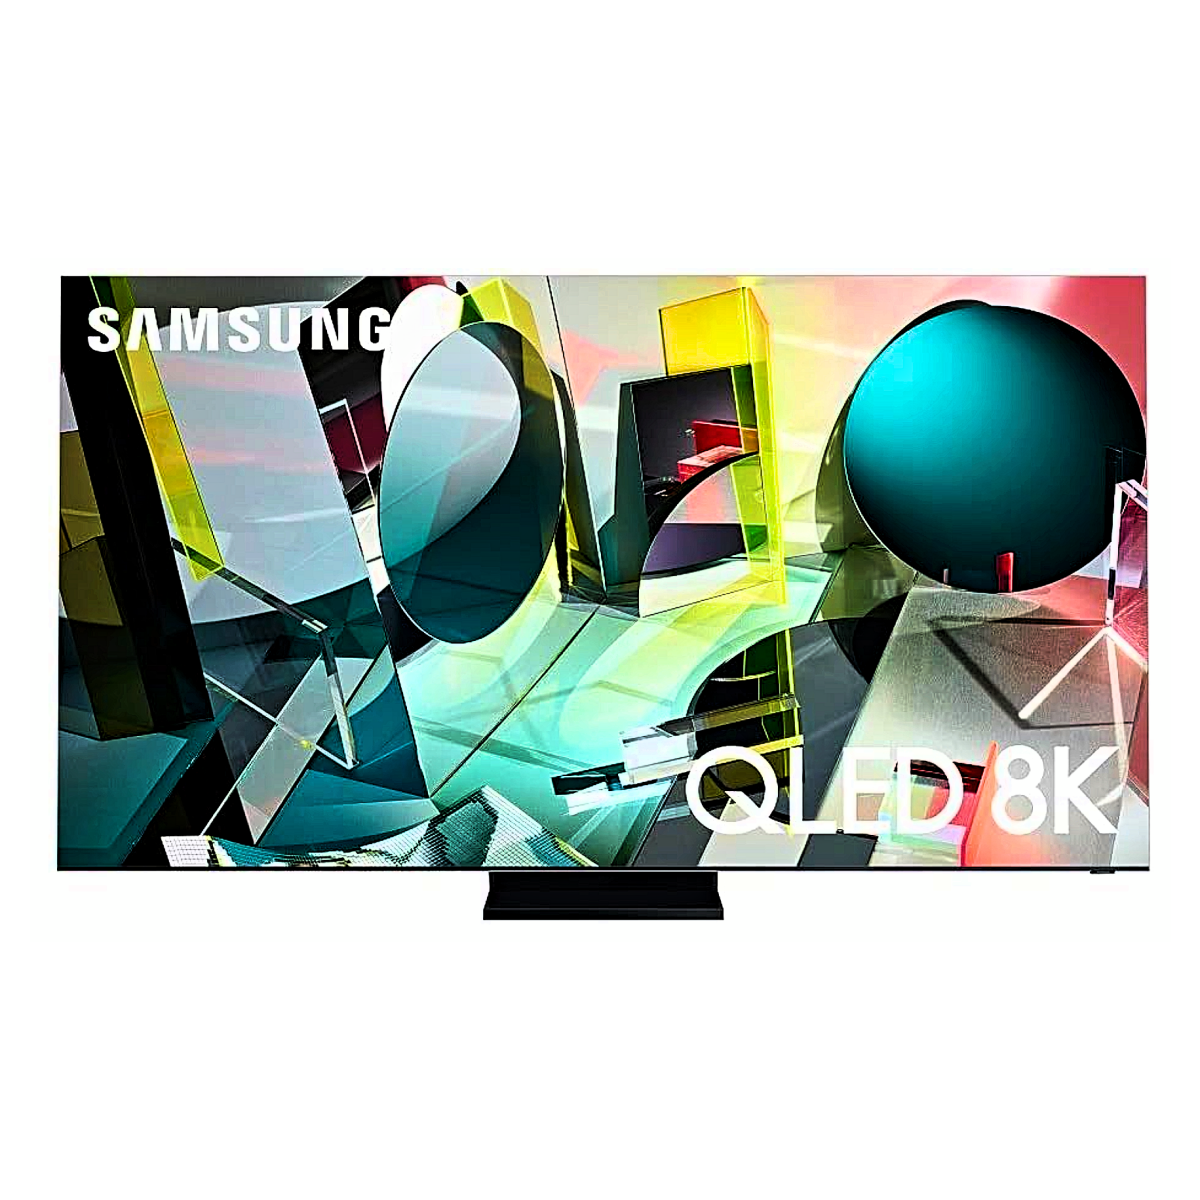 An 85-inch Samsung Q950TS QLED TV